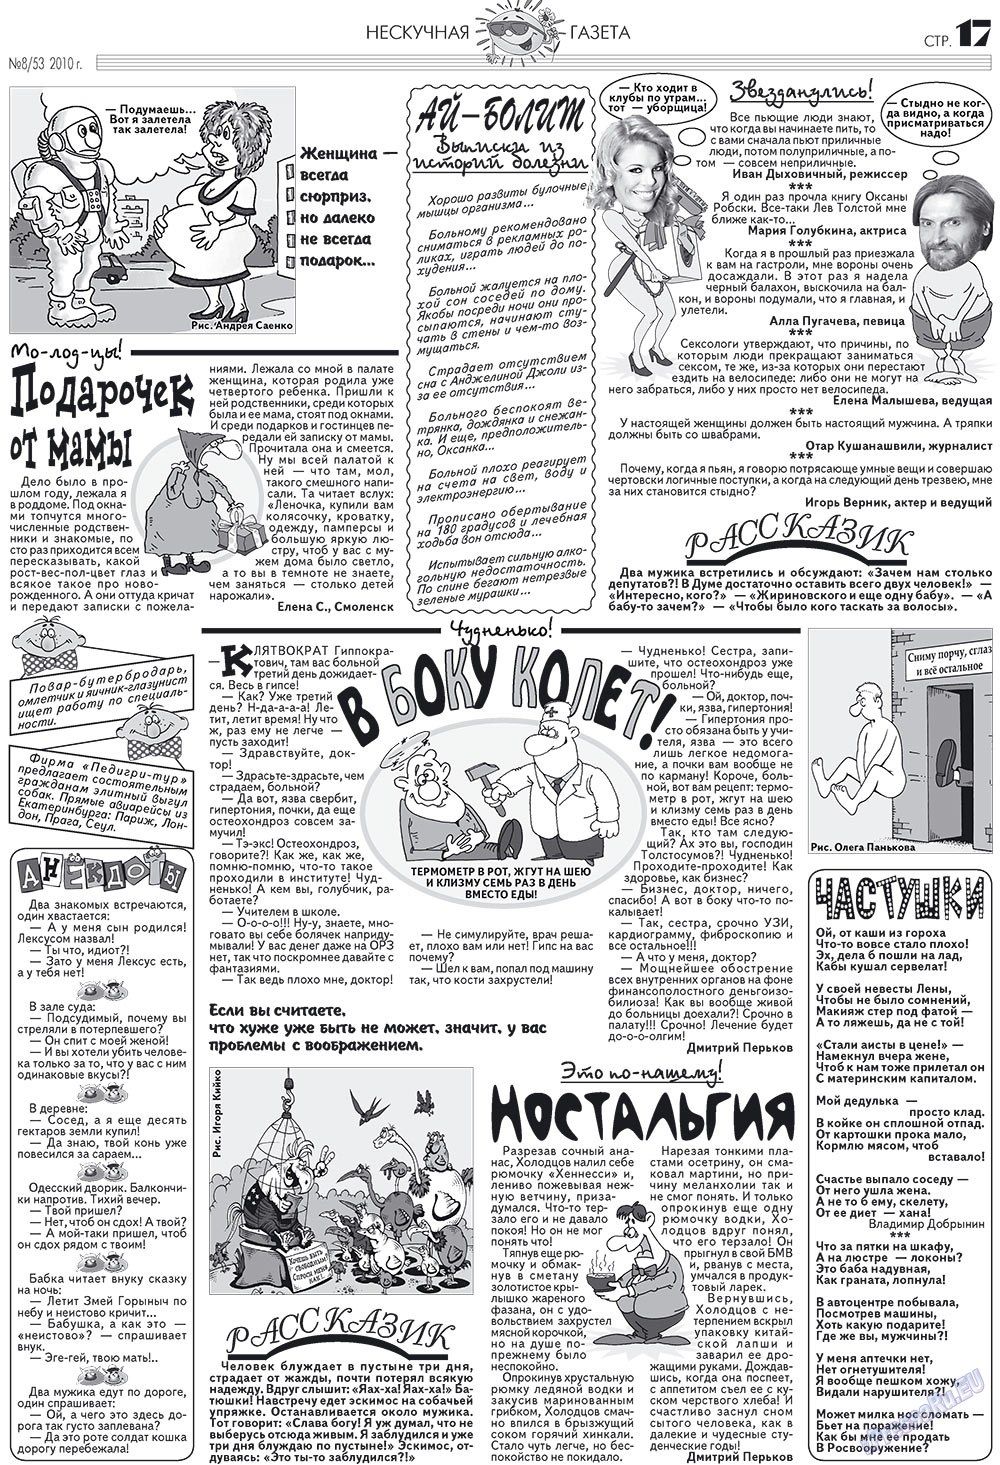 Нескучная газета (журнал). 2010 год, номер 8, стр. 17